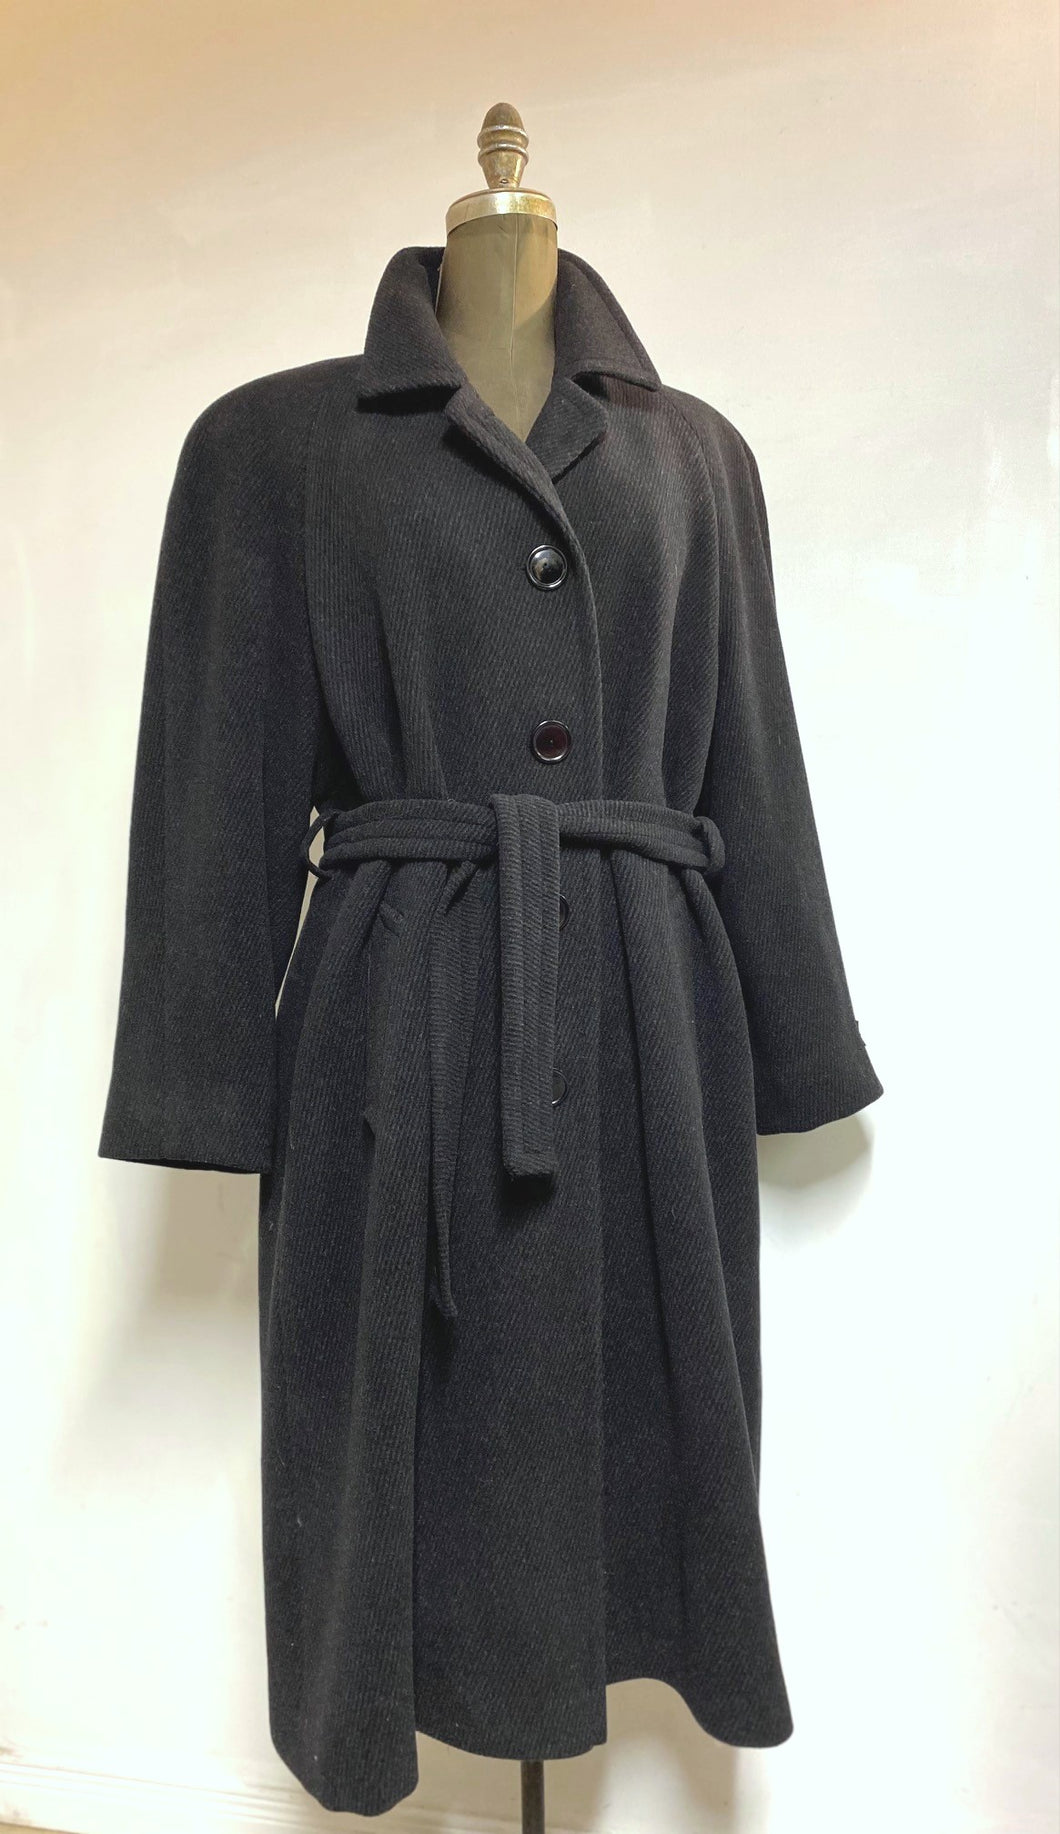 Jackie Belted Coat - 100% Pure Virgin Wool